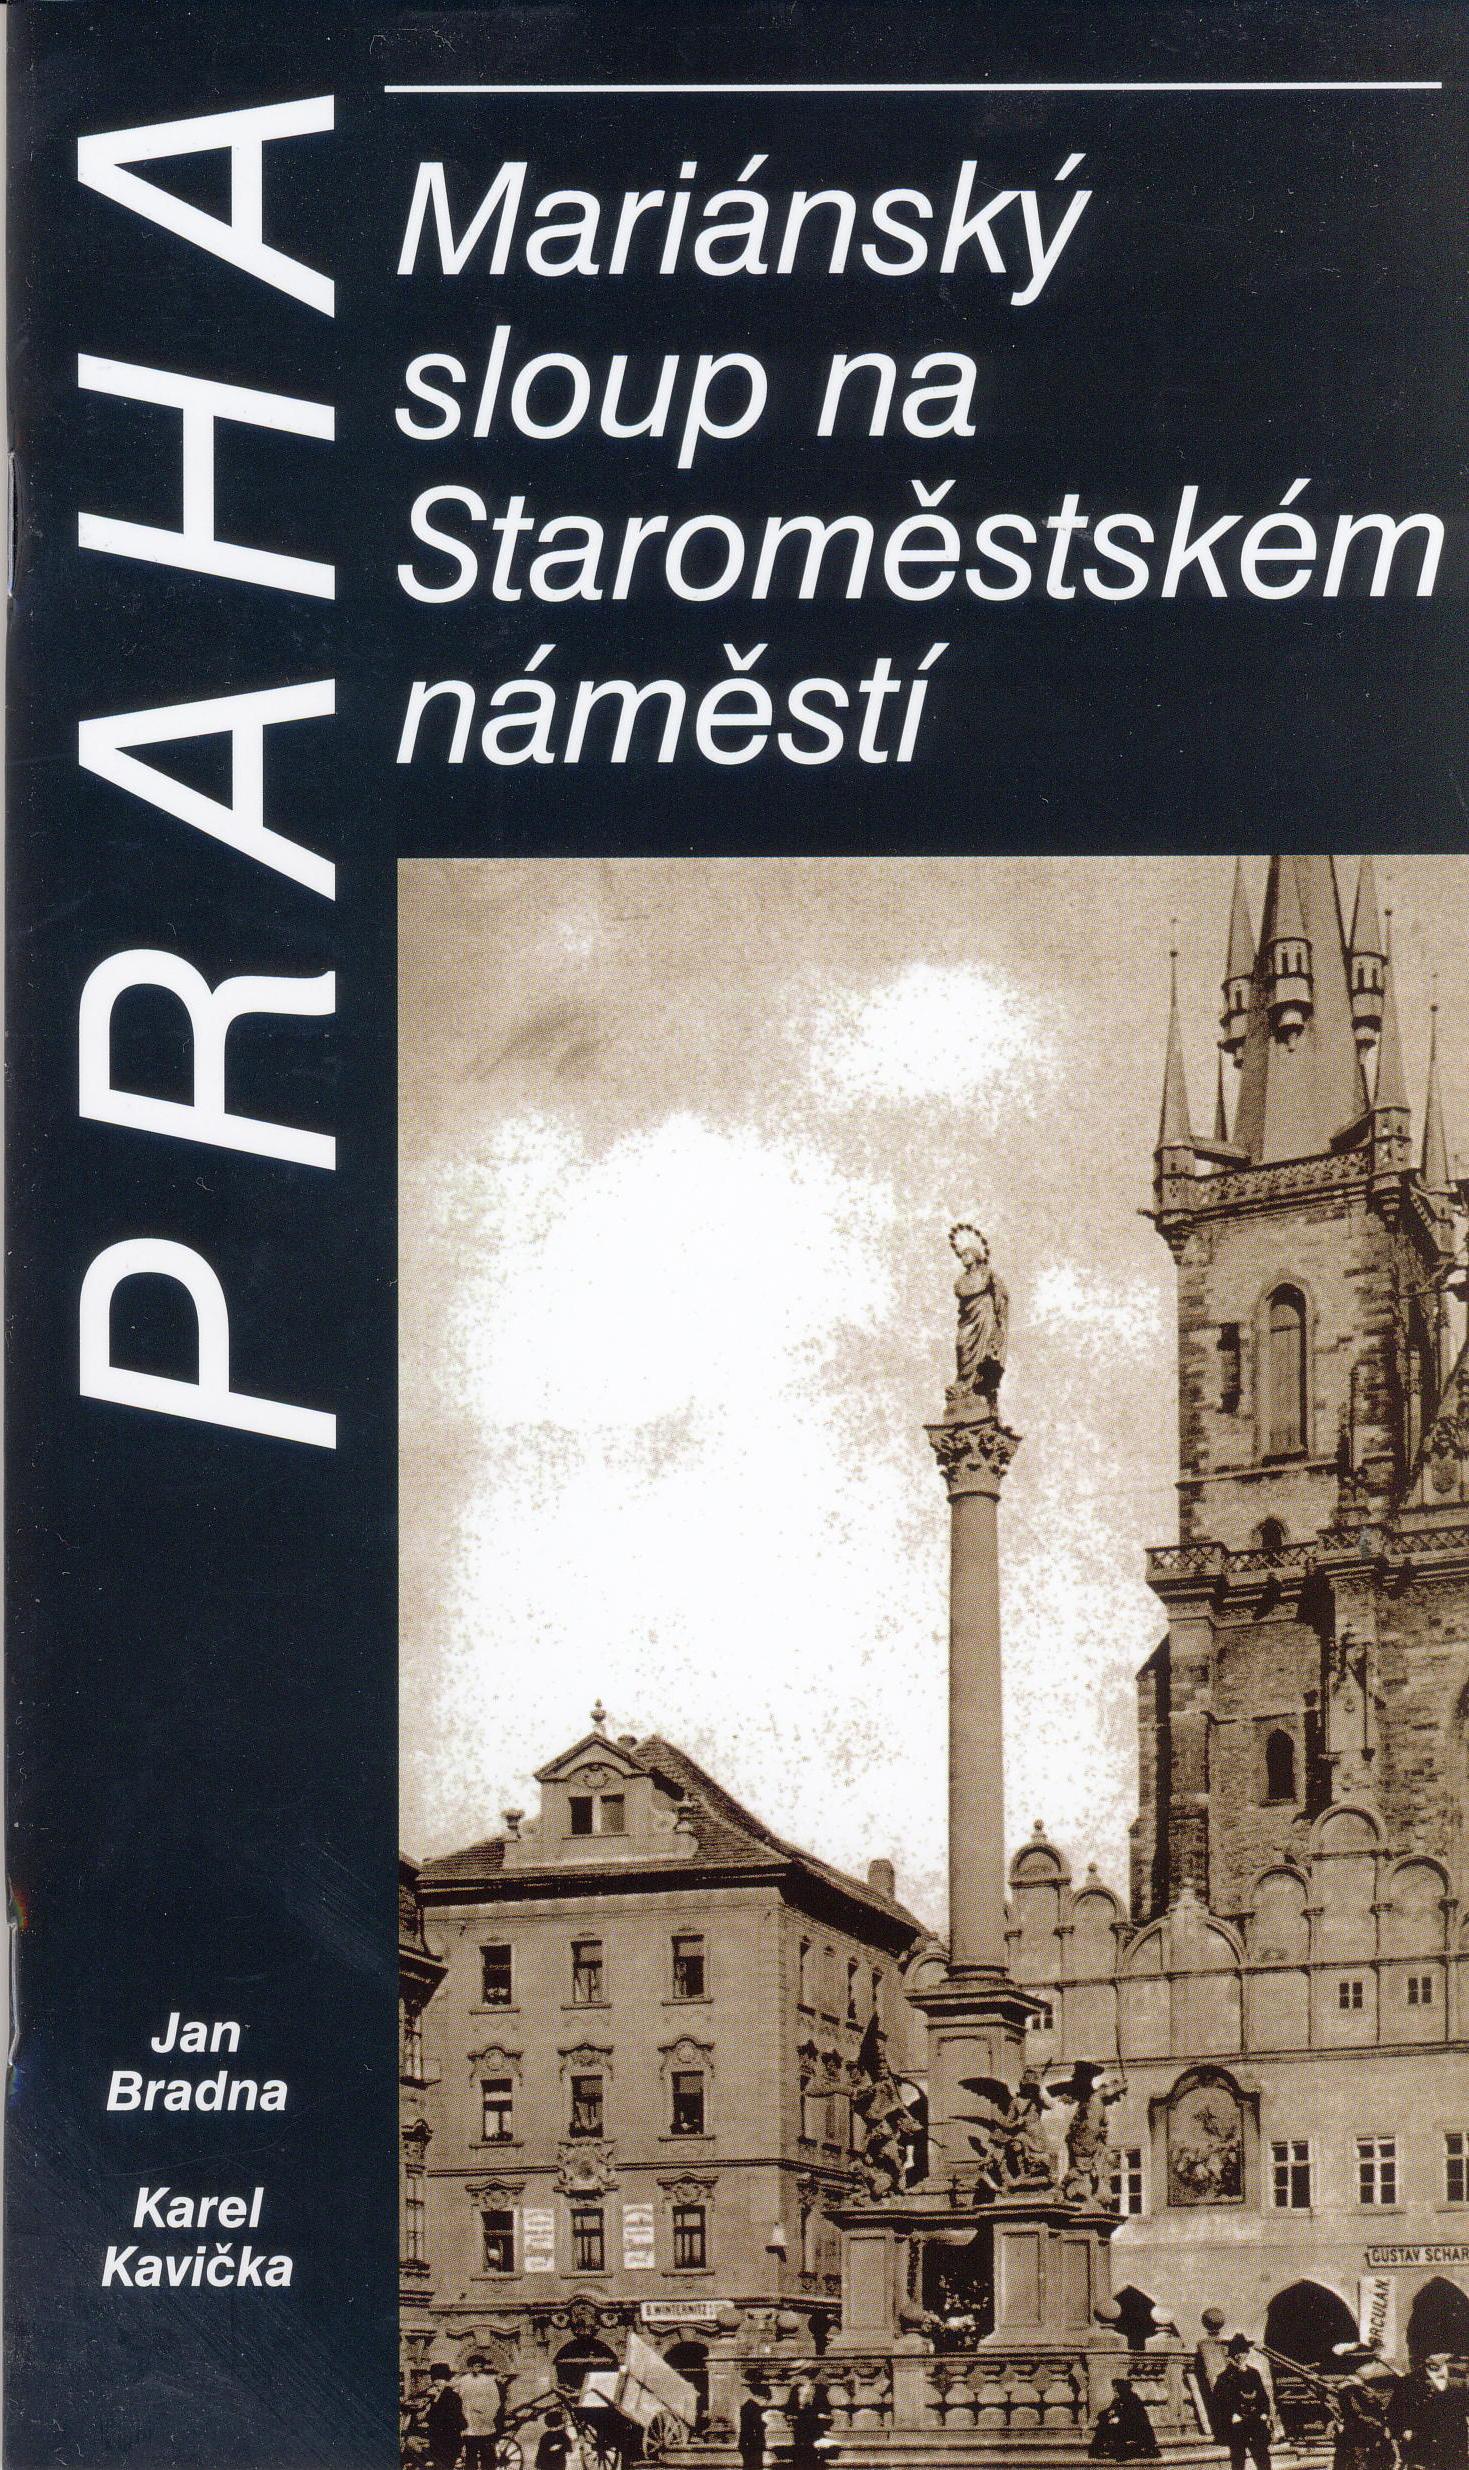 Praha, mariánský sloup na Sraoměstském náměstí.jpg